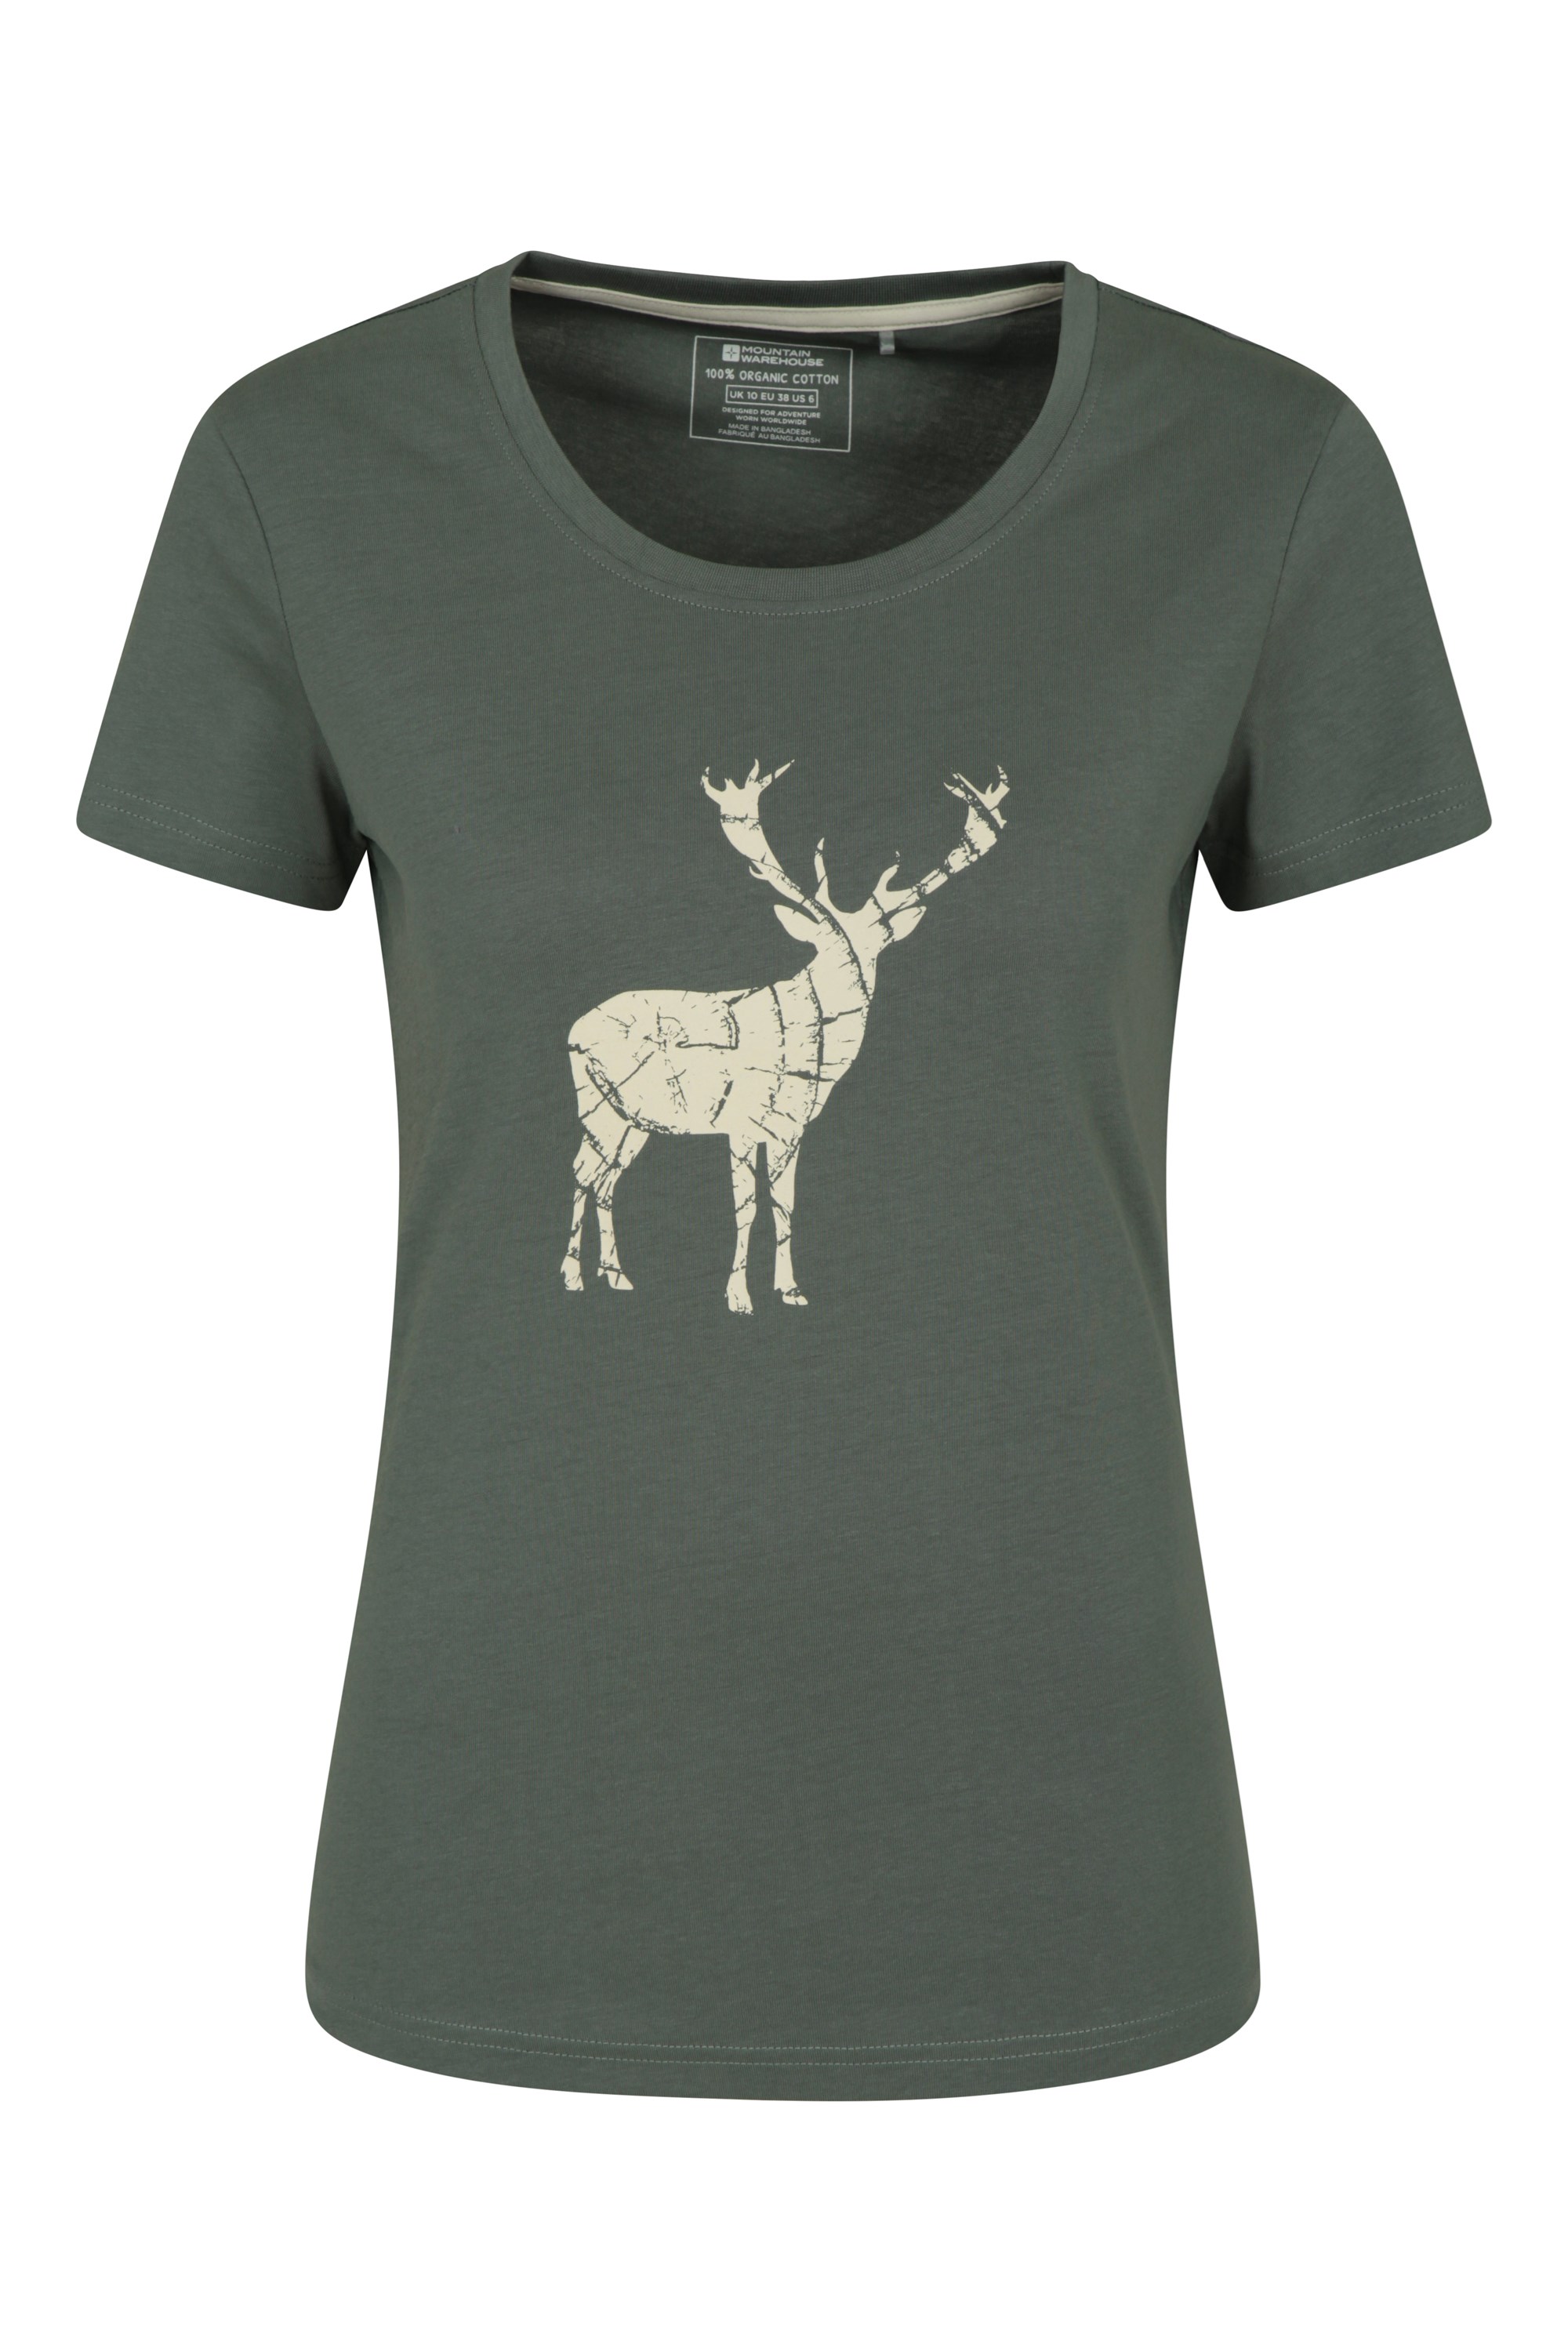 T-Shirt Stag Femme - Vert